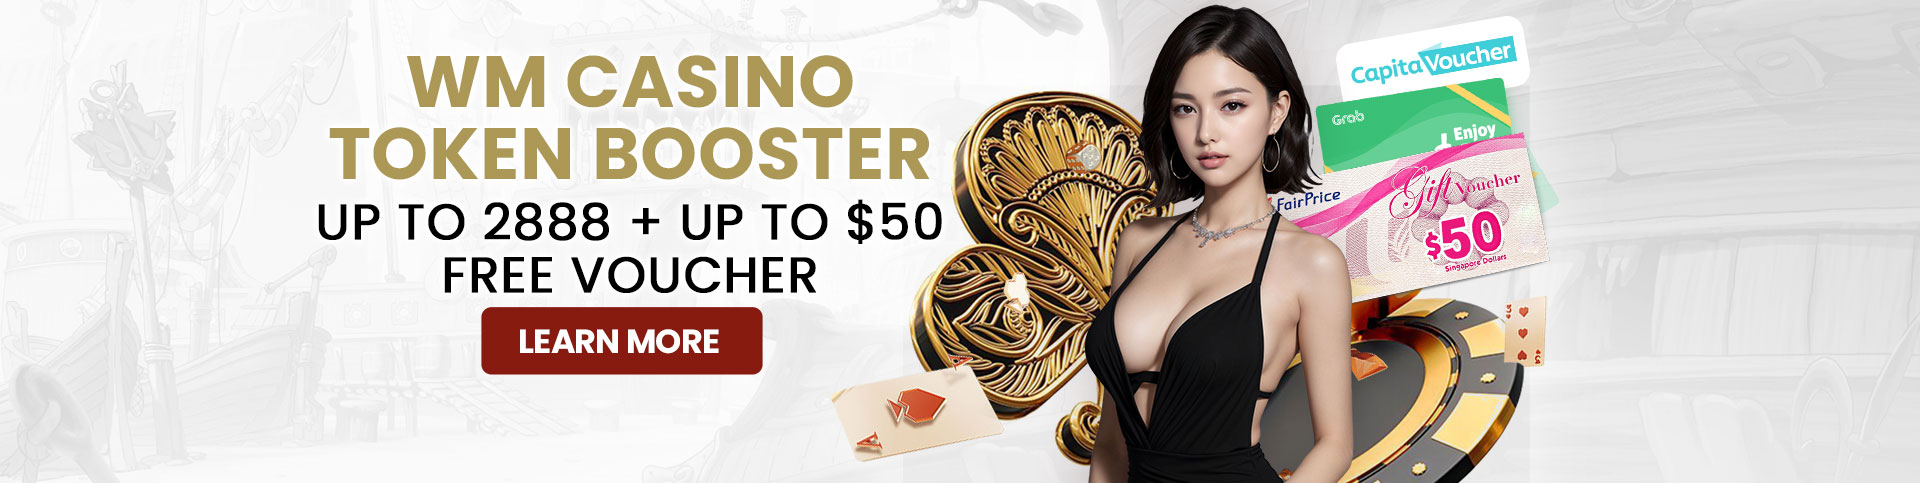 wm casino homepage banner